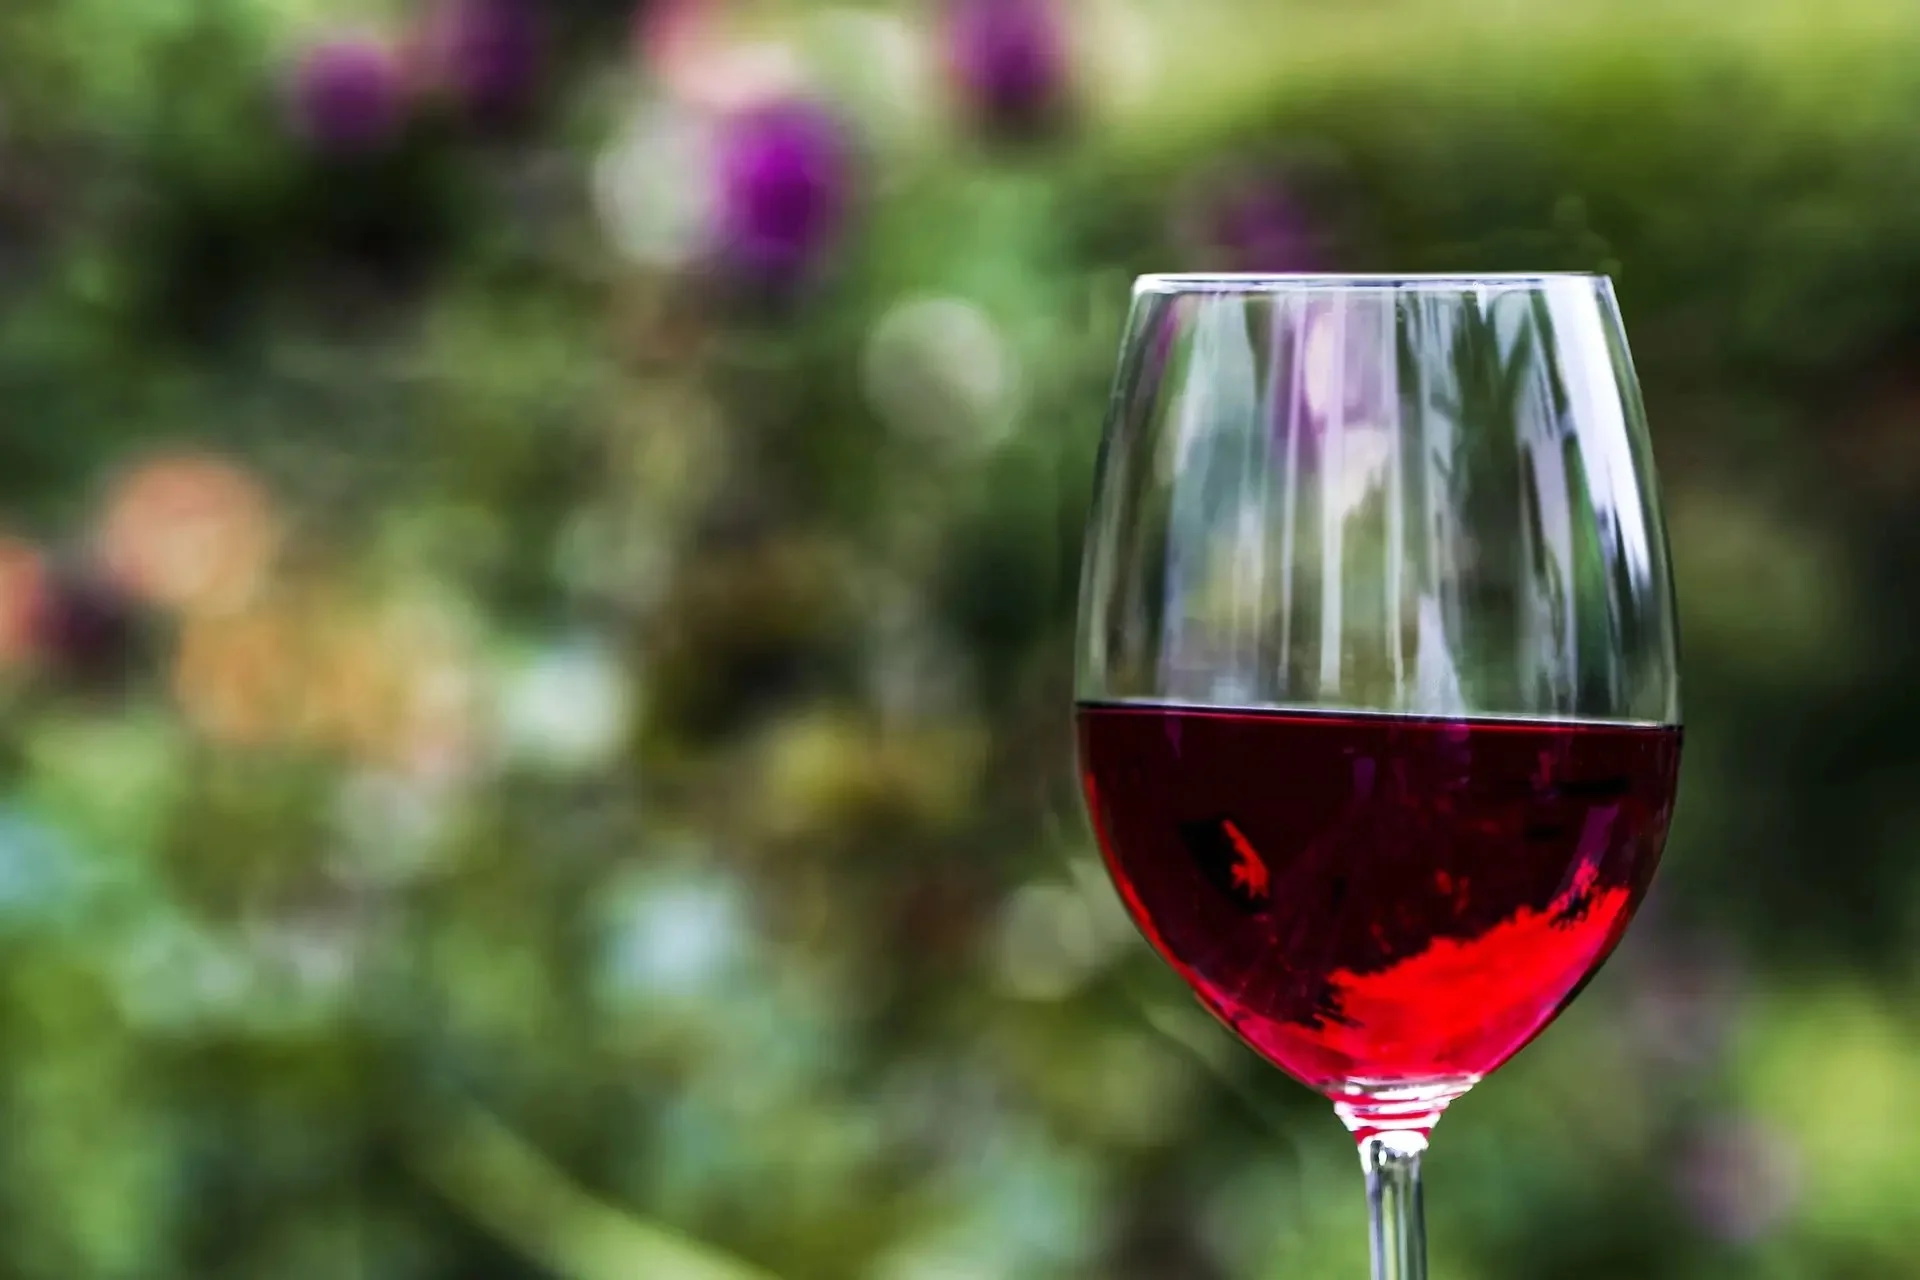 Negli ultimi dieci anni, le produzioni di vini biologici in Italia sono cresciute del 110%, e il trend non sembra registrare battute d’arresto